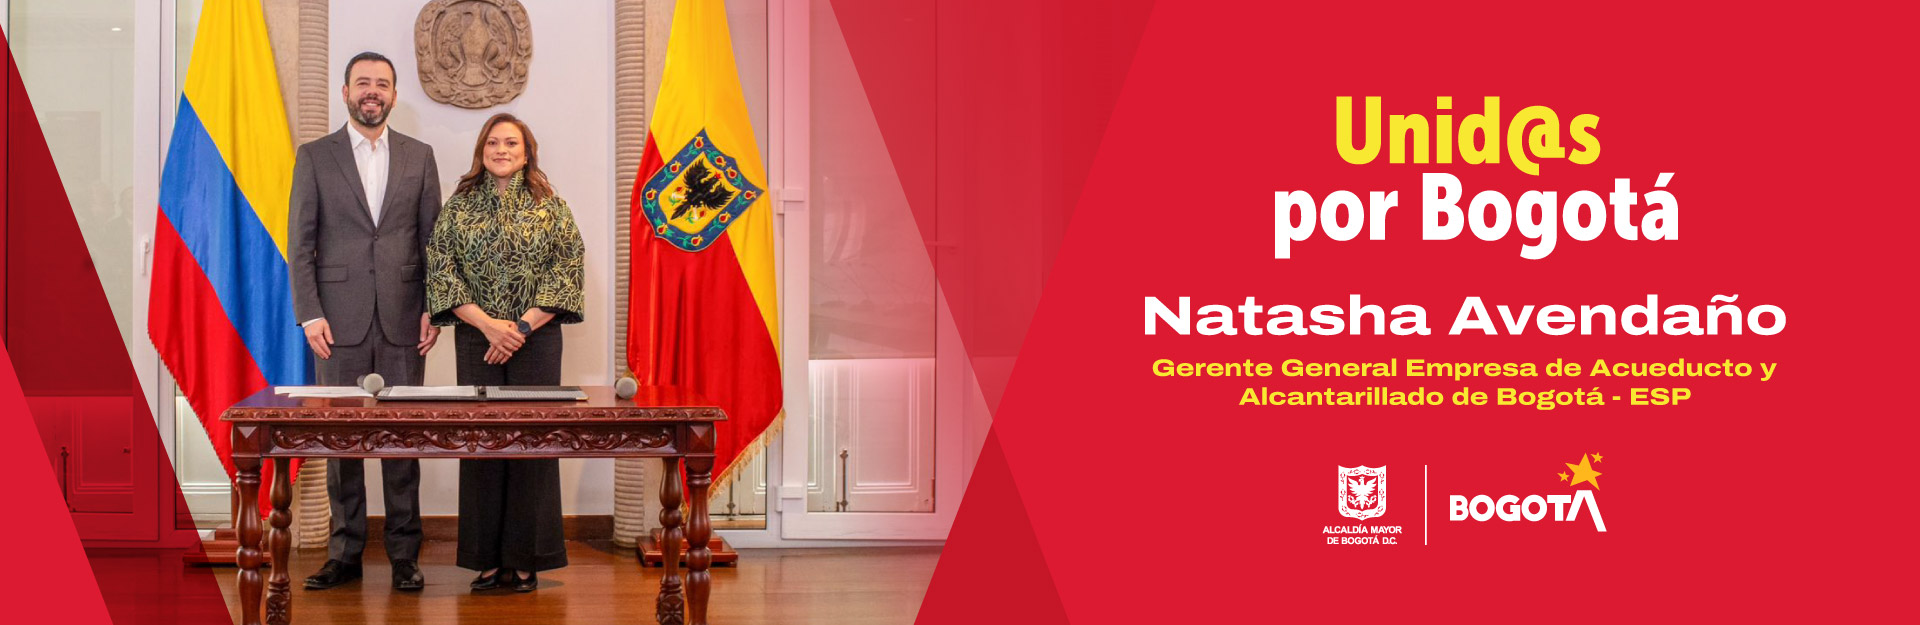 Natasha Avendaño, experta en servicios públicos asume la gerencia de la Empresa de Acueducto y Alcantarillado de Bogotá - ESP